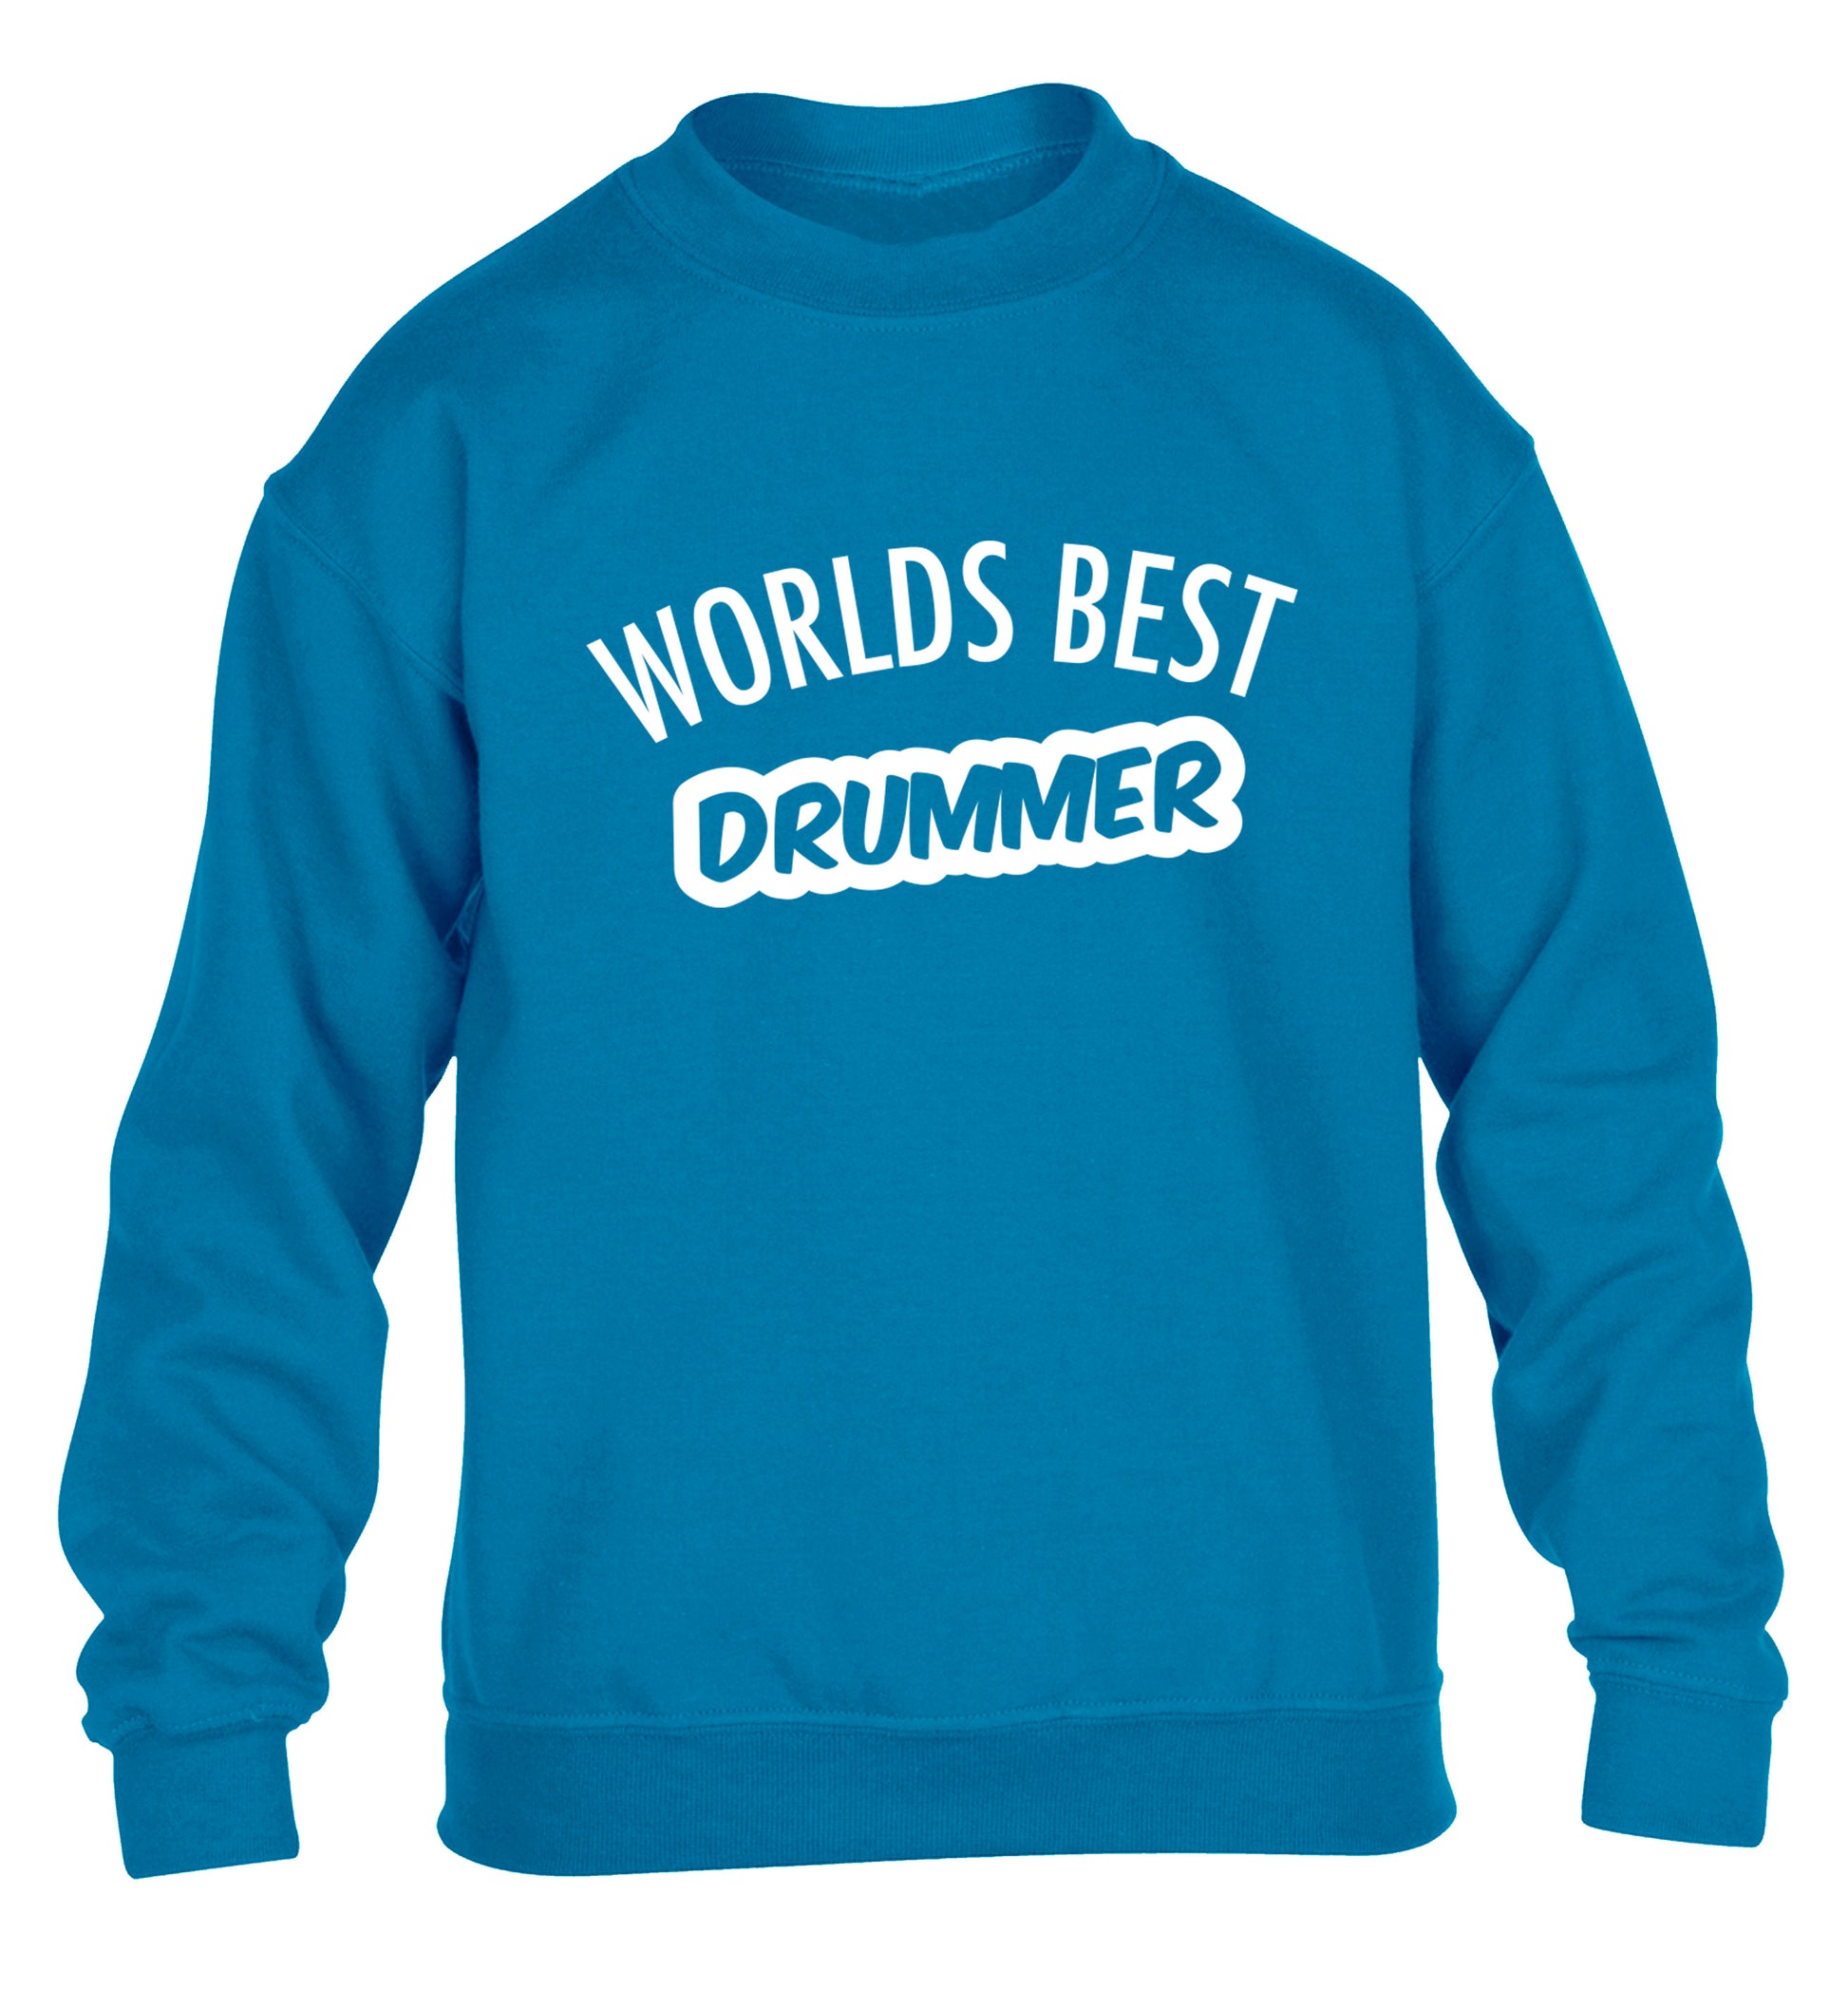 Worlds best drummer children's blue sweater 12-13 Years